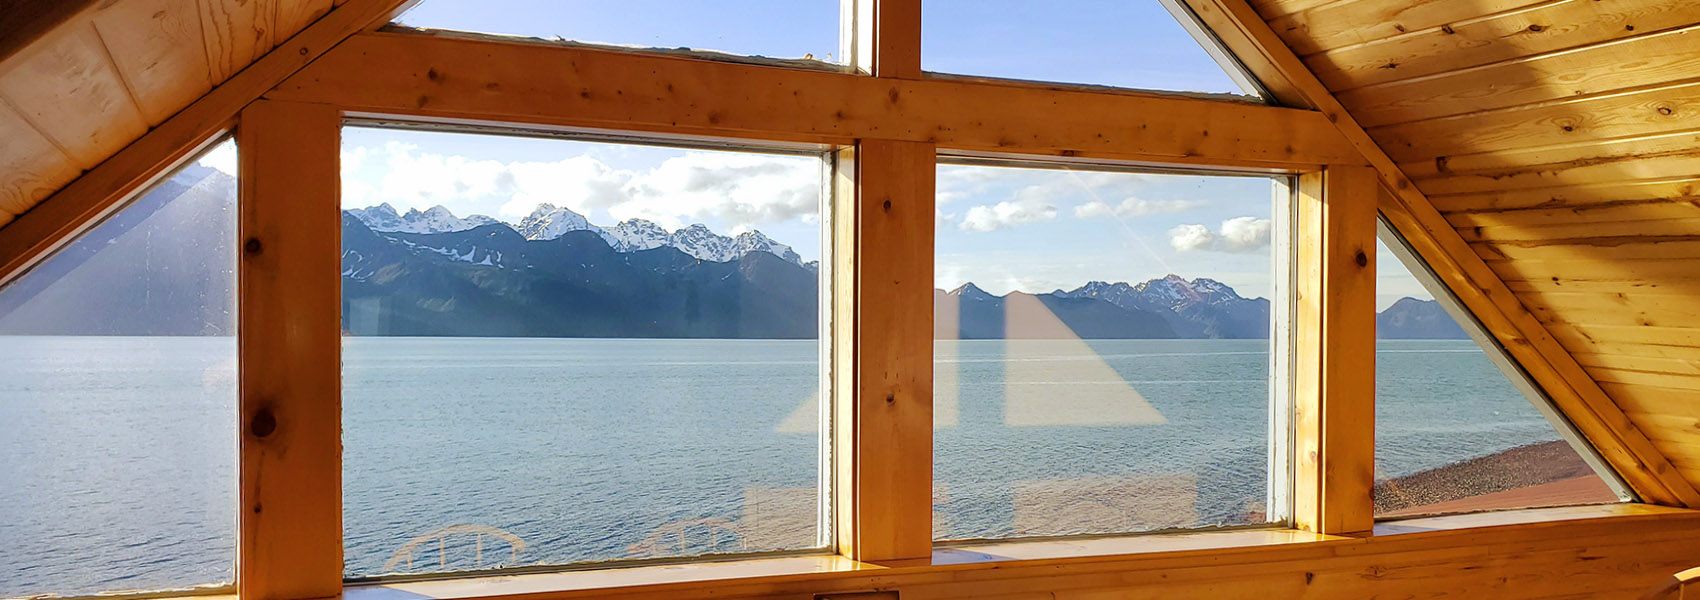 view of mountains through window